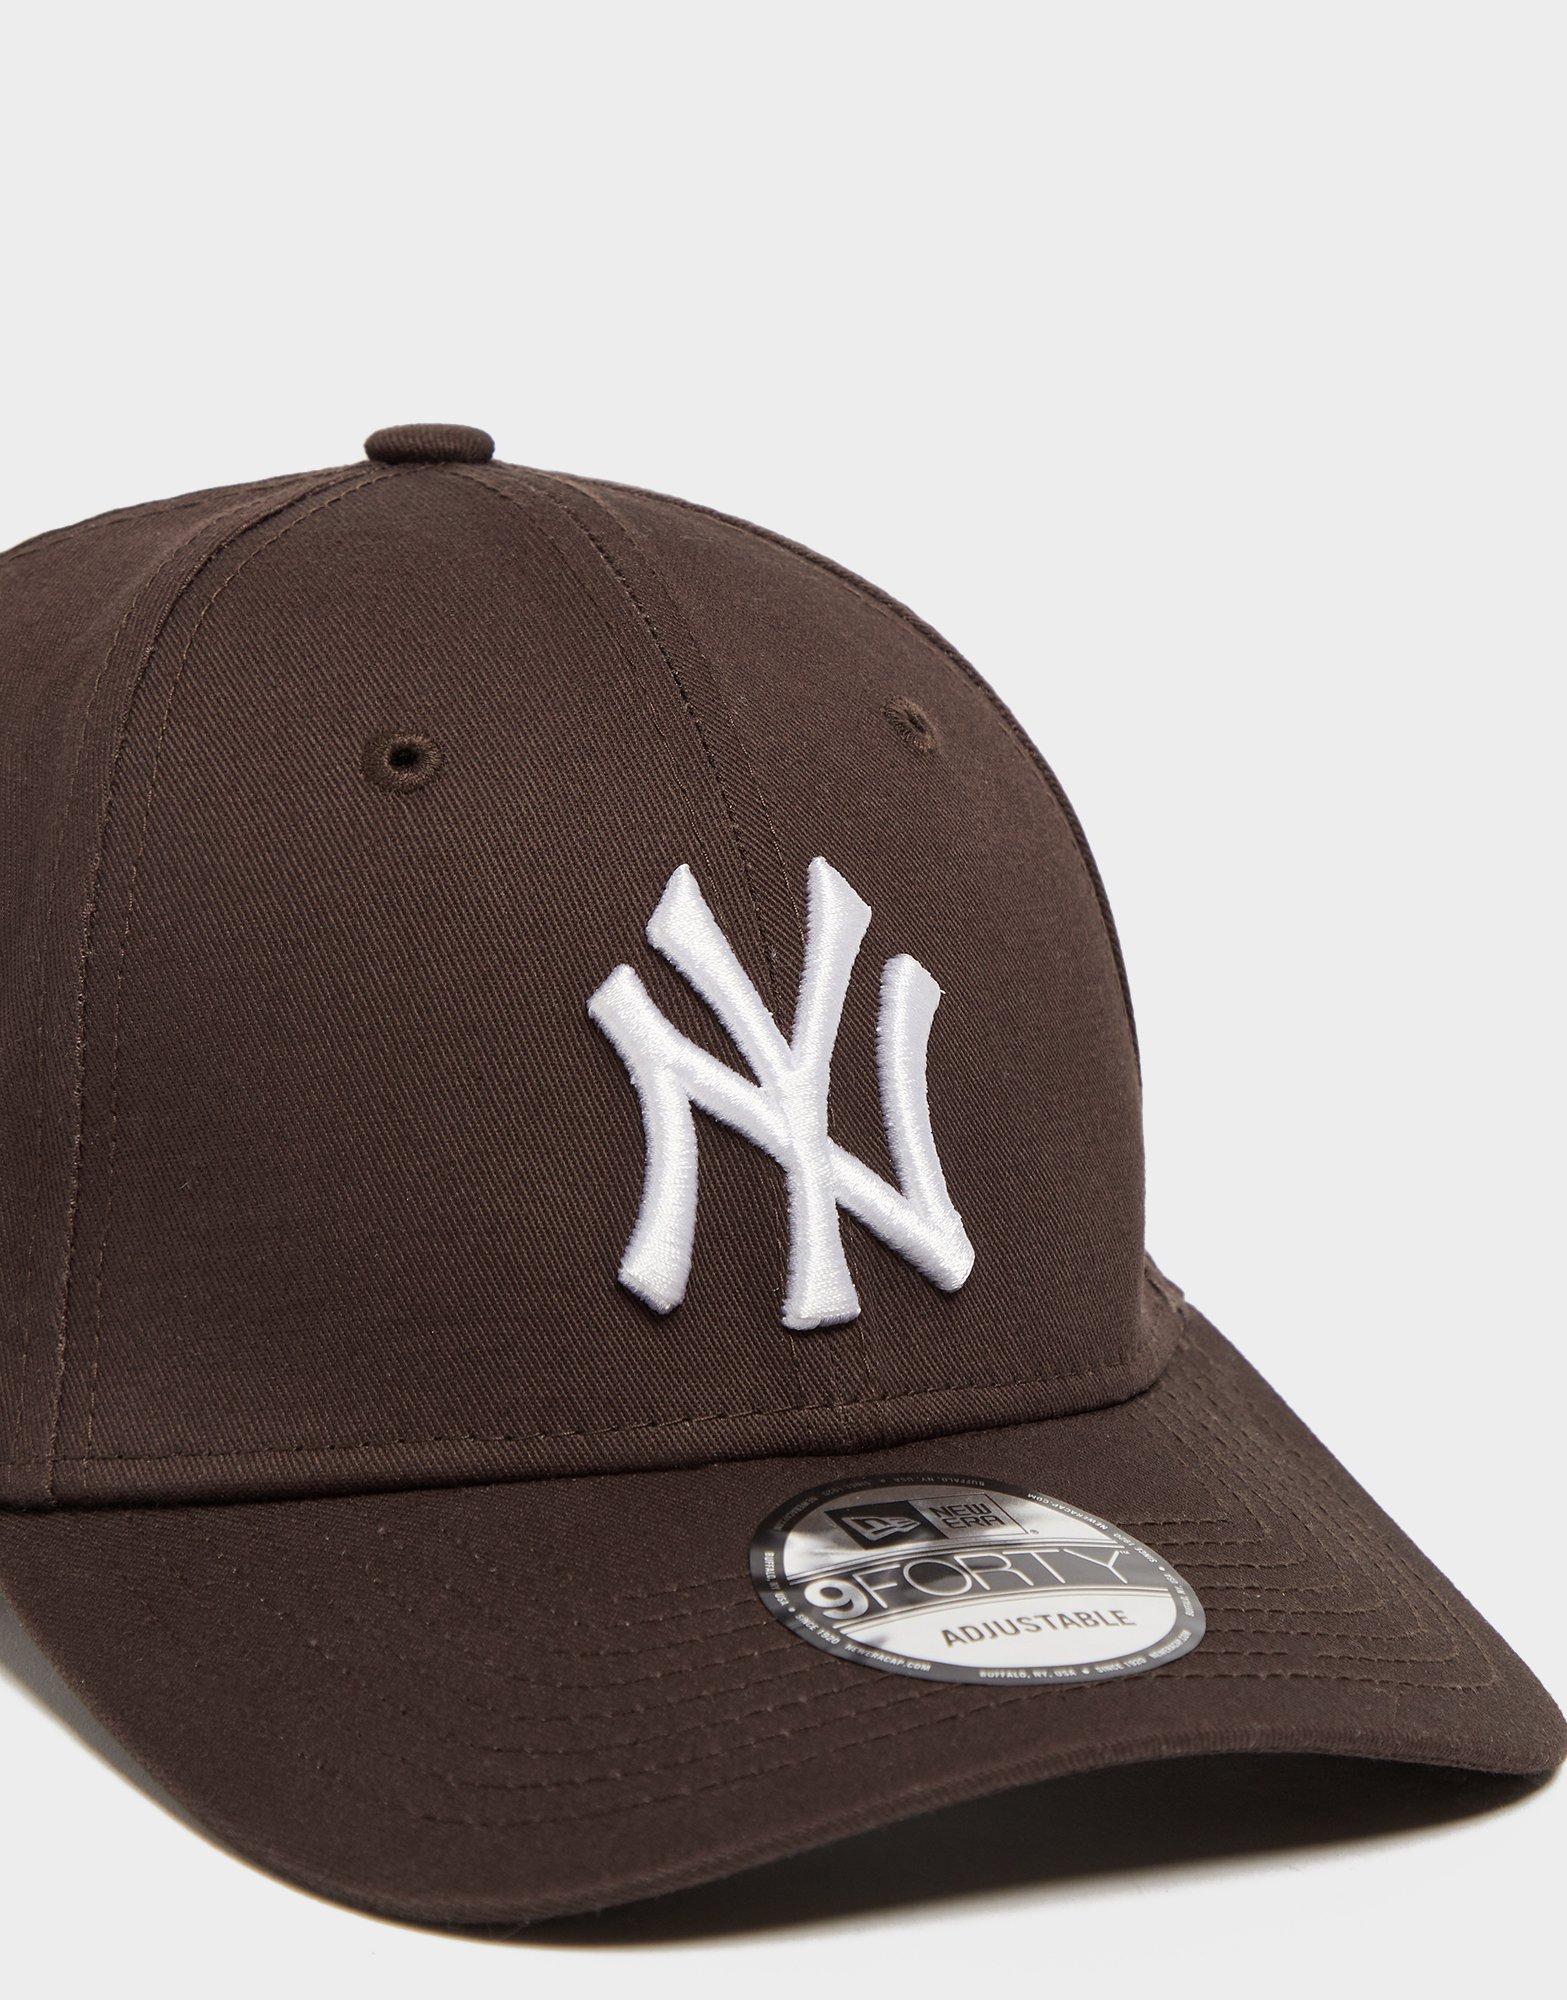 Brown New Era MLB New York Yankees 9FORTY Cap